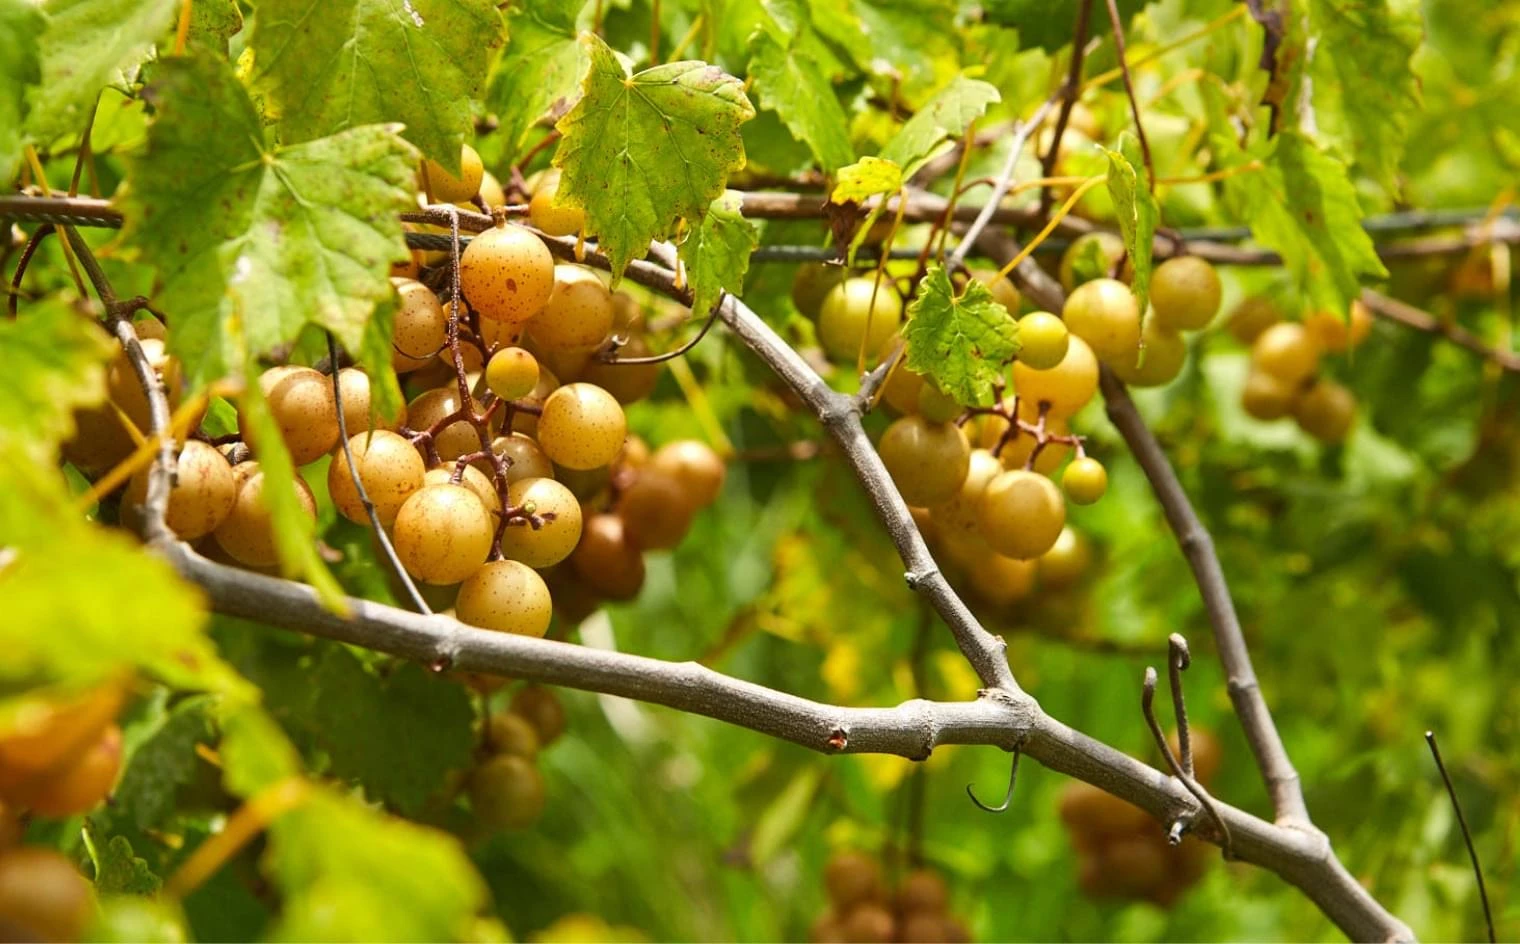 Sweet jubilee grapes